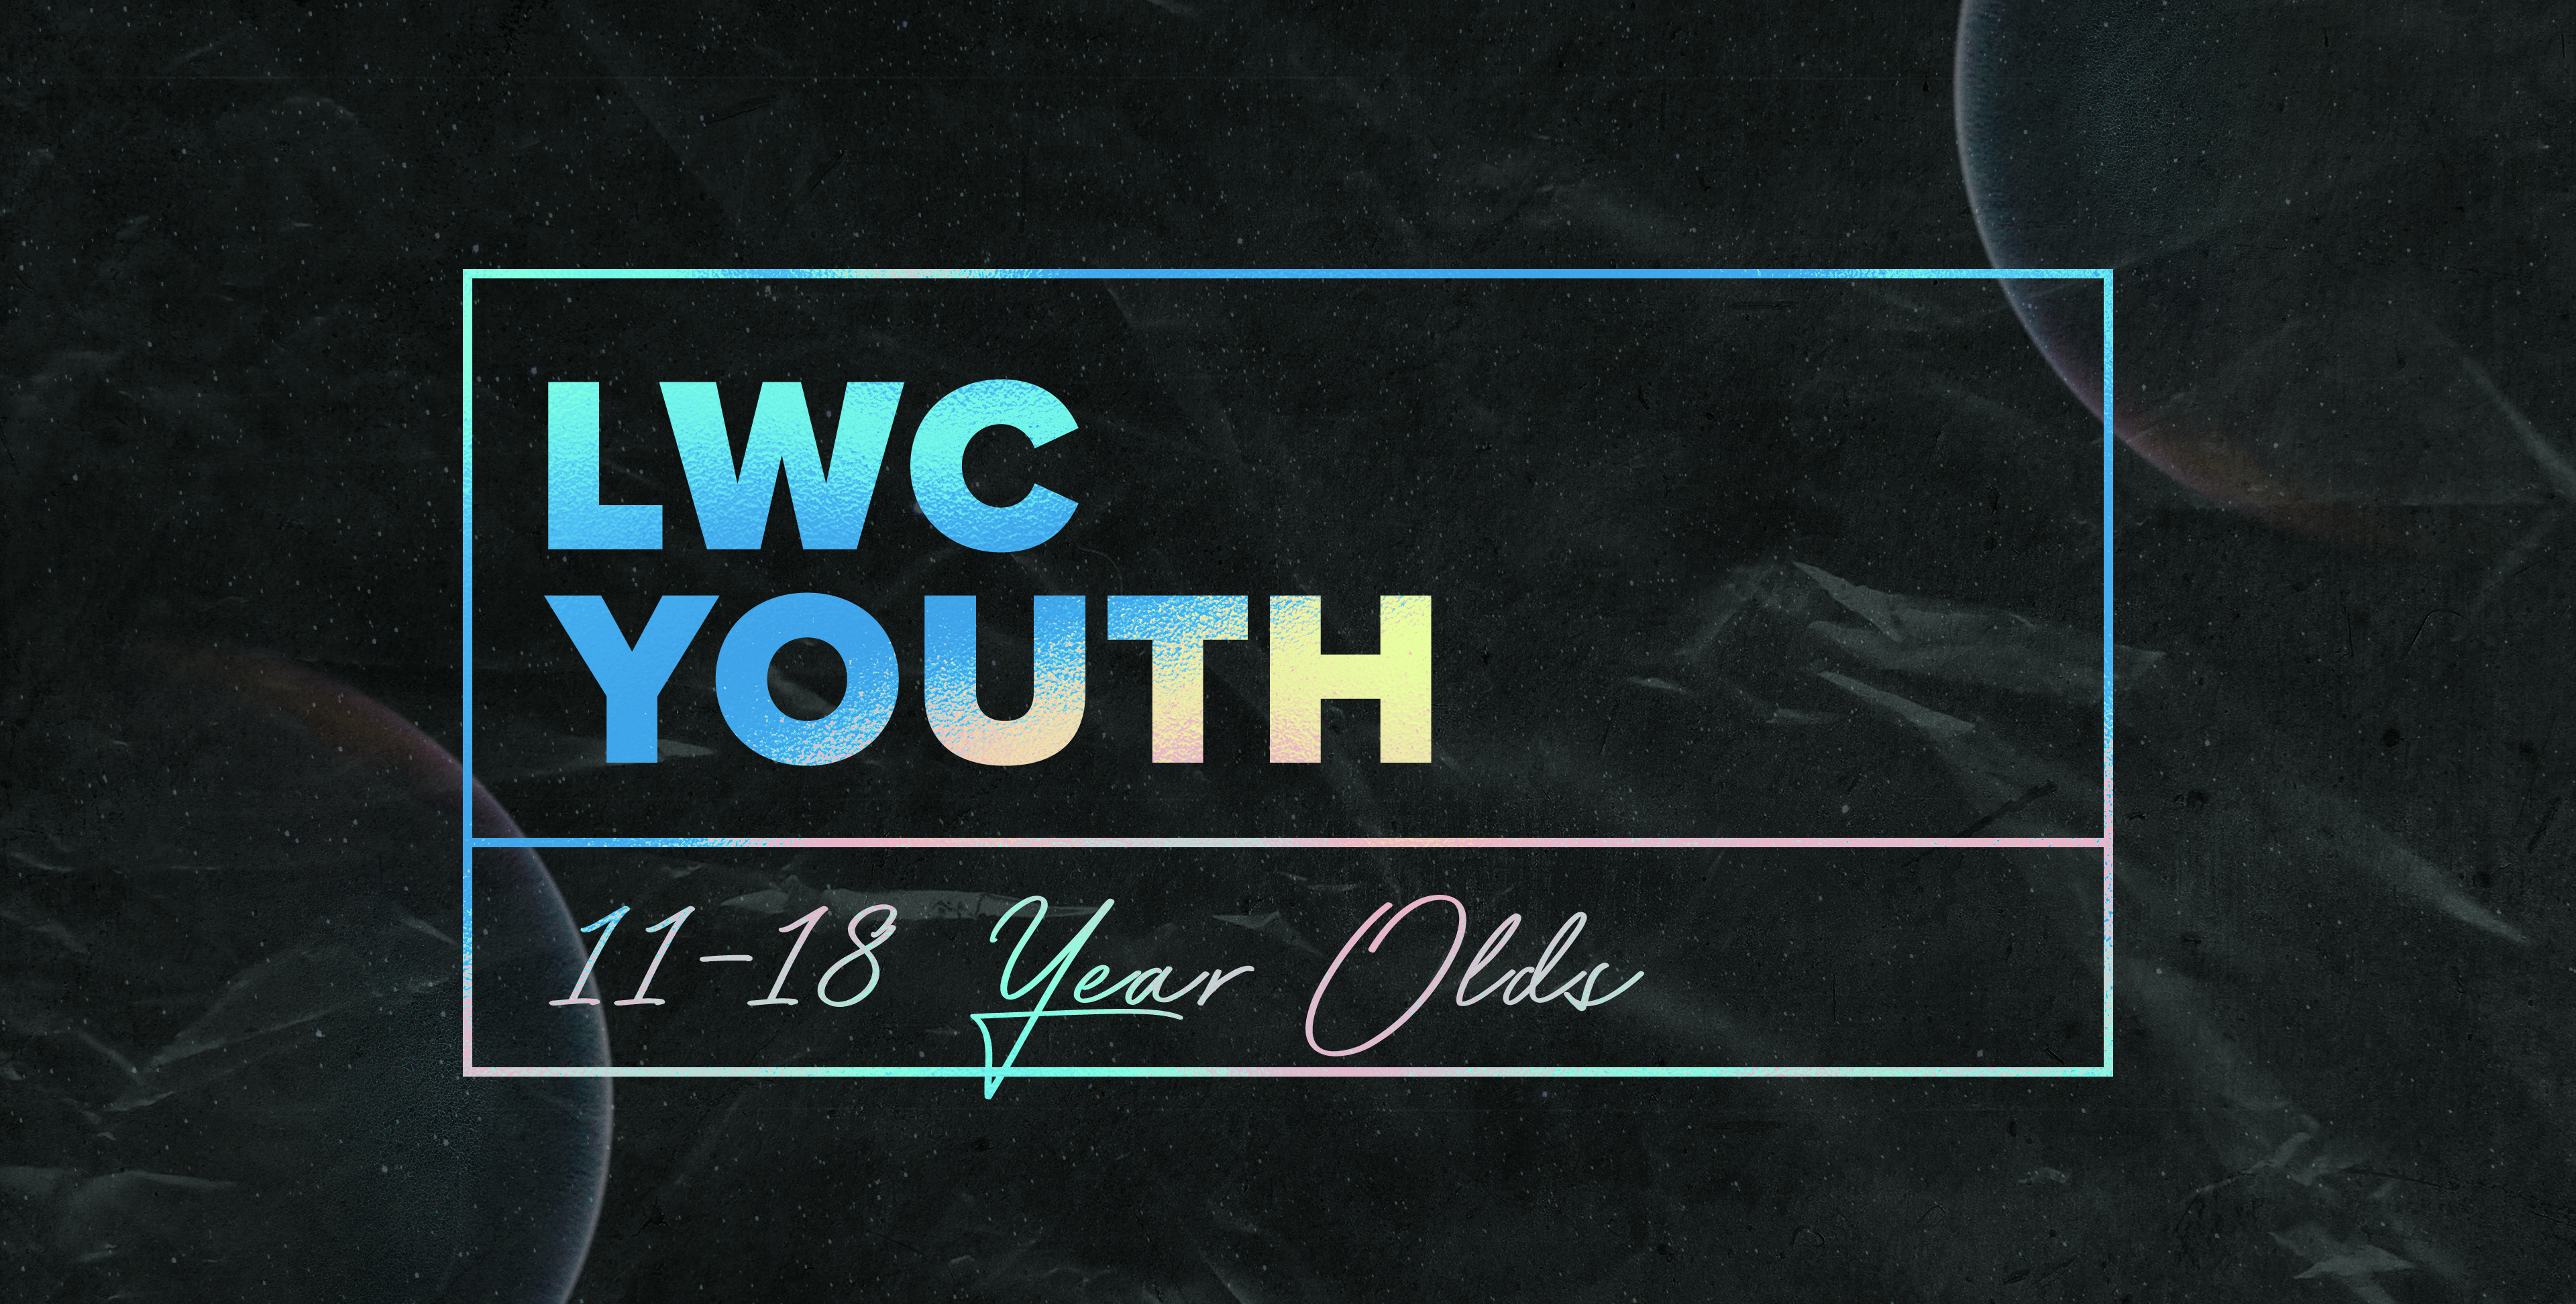 LWC Youth calendar